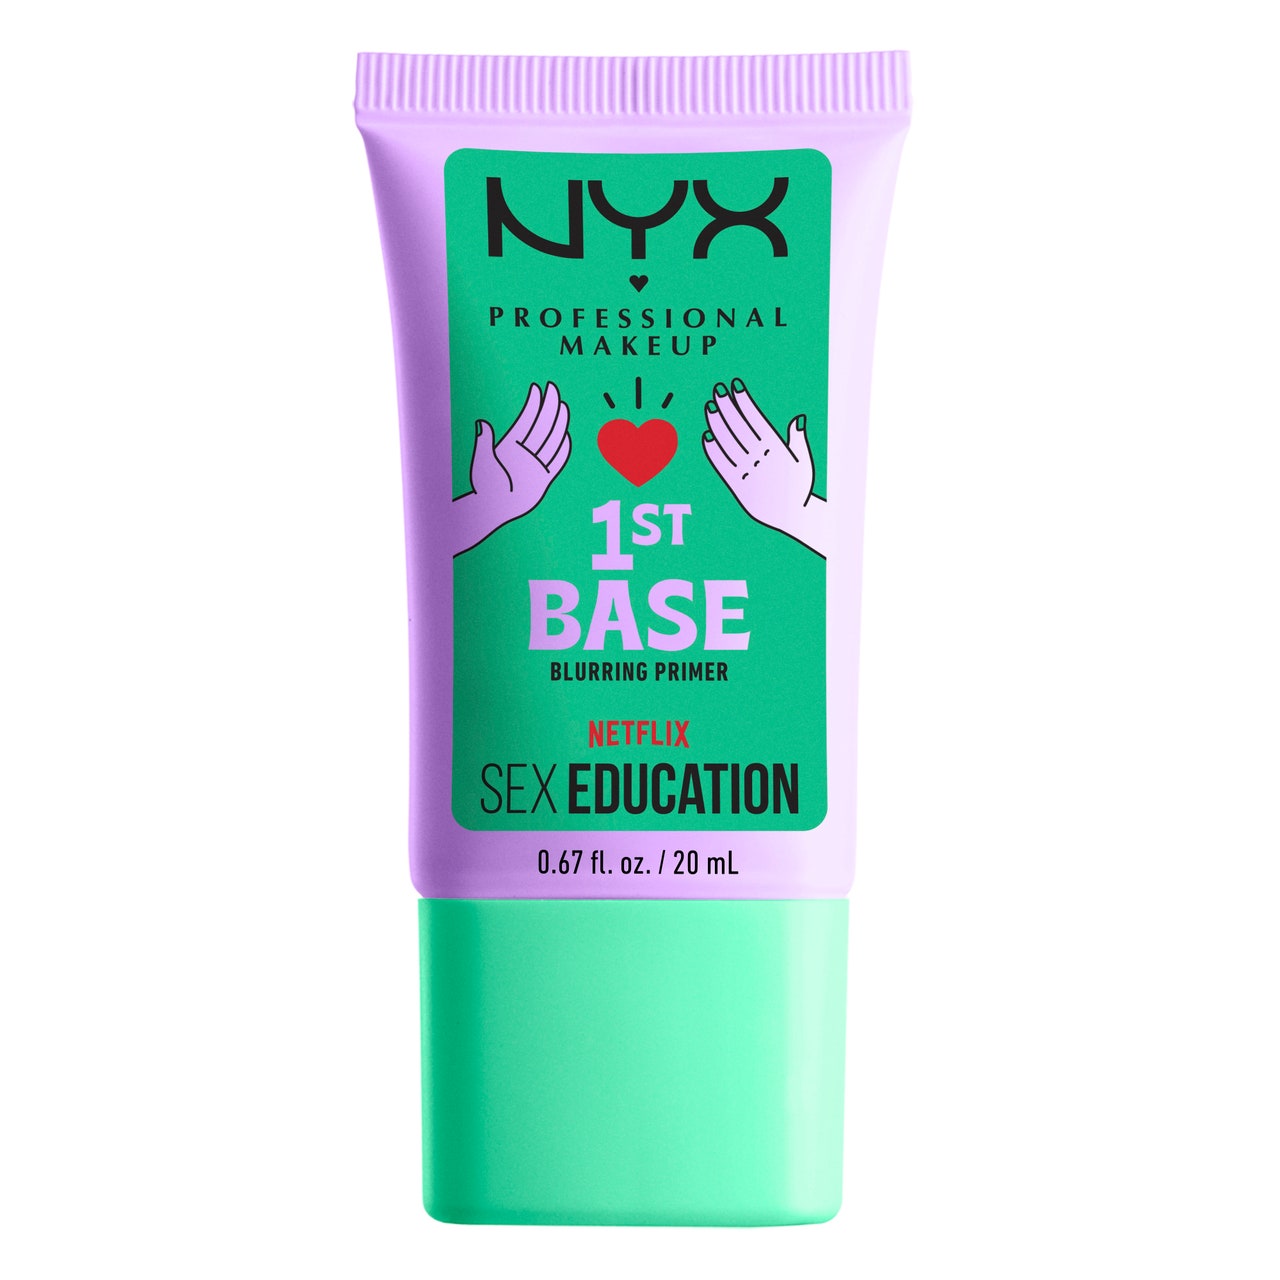 NYX брэнд “Sex Education” цувралд зориулж косметикийн цуглуулга гаргалаа (фото 3)